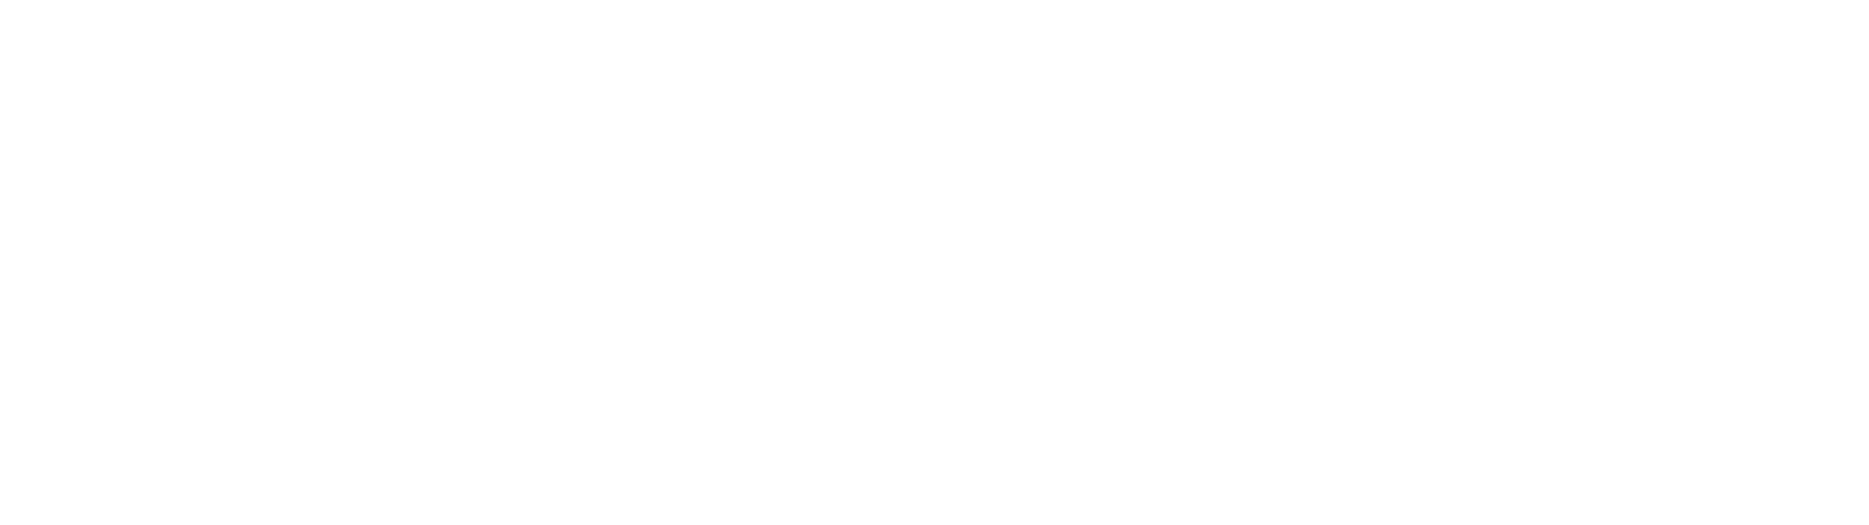 TKD Lingerie logo